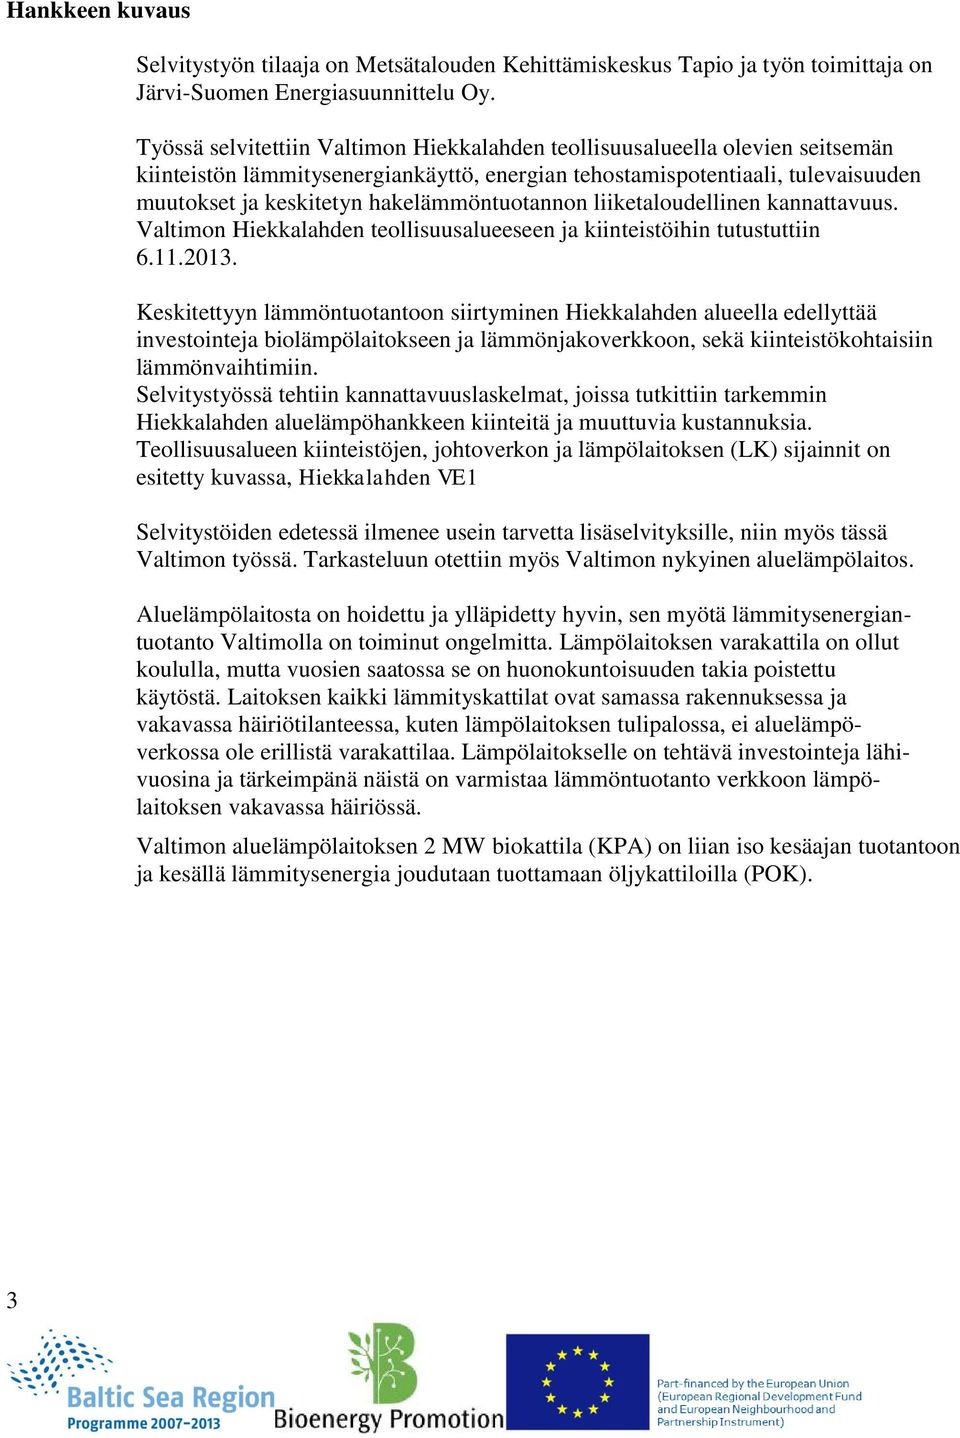 hakelämmöntuotannon liiketaloudellinen kannattavuus. Valtimon Hiekkalahden teollisuusalueeseen ja kiinteistöihin tutustuttiin 6.11.2013.